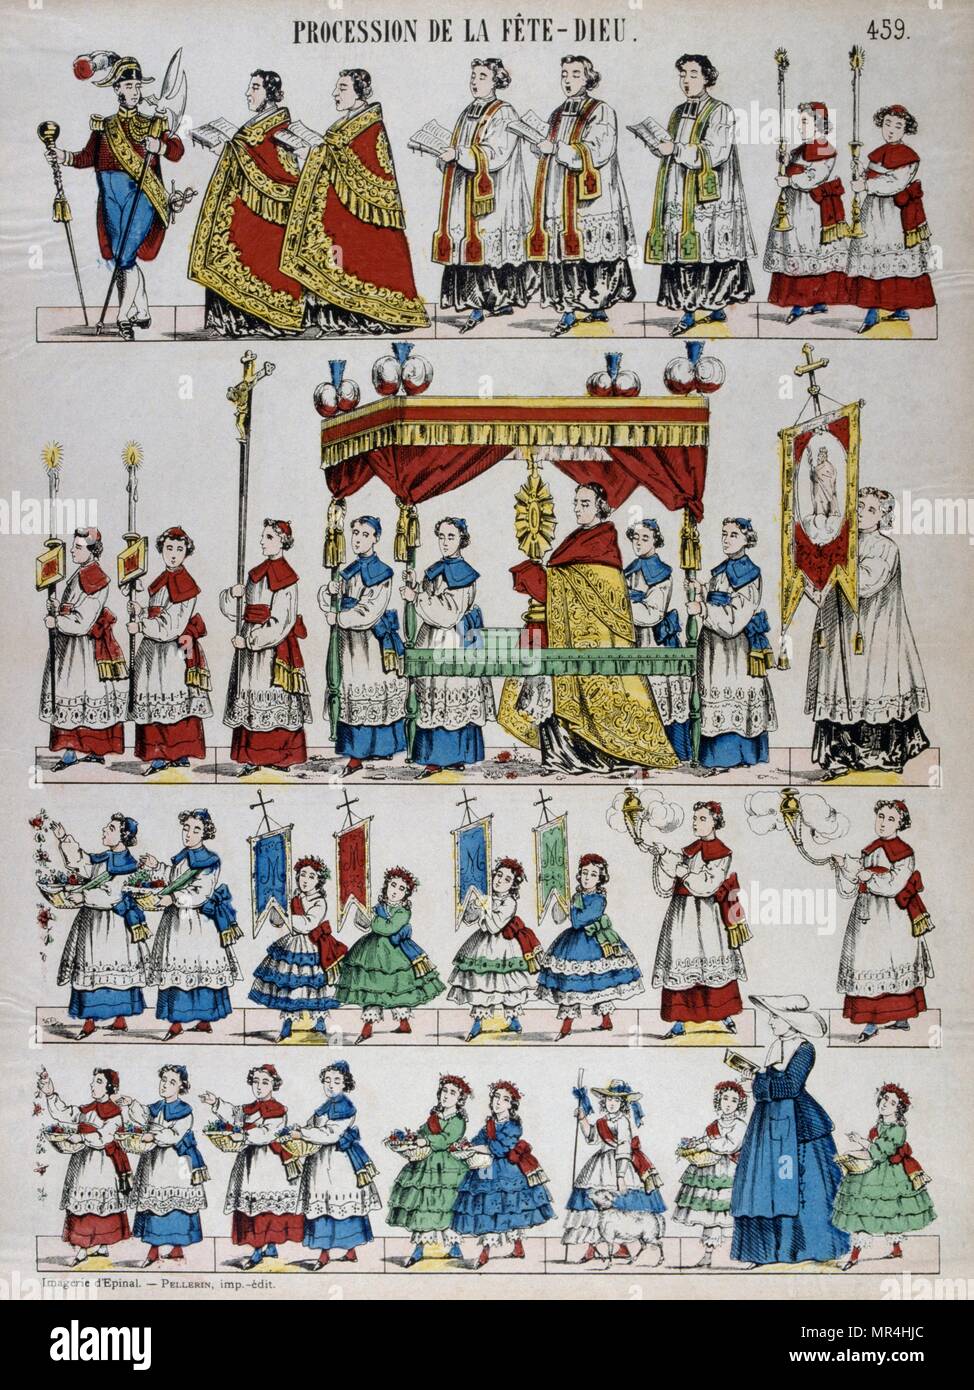 Gravure sur bois en couleur illustration montrant une procession religieuse catholique des prêtres, des enfants et de l'encens. Le français vers 1850 Banque D'Images